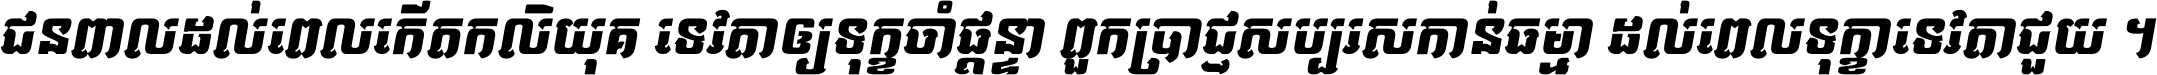 Kh Baphnom 041 Savy Italic